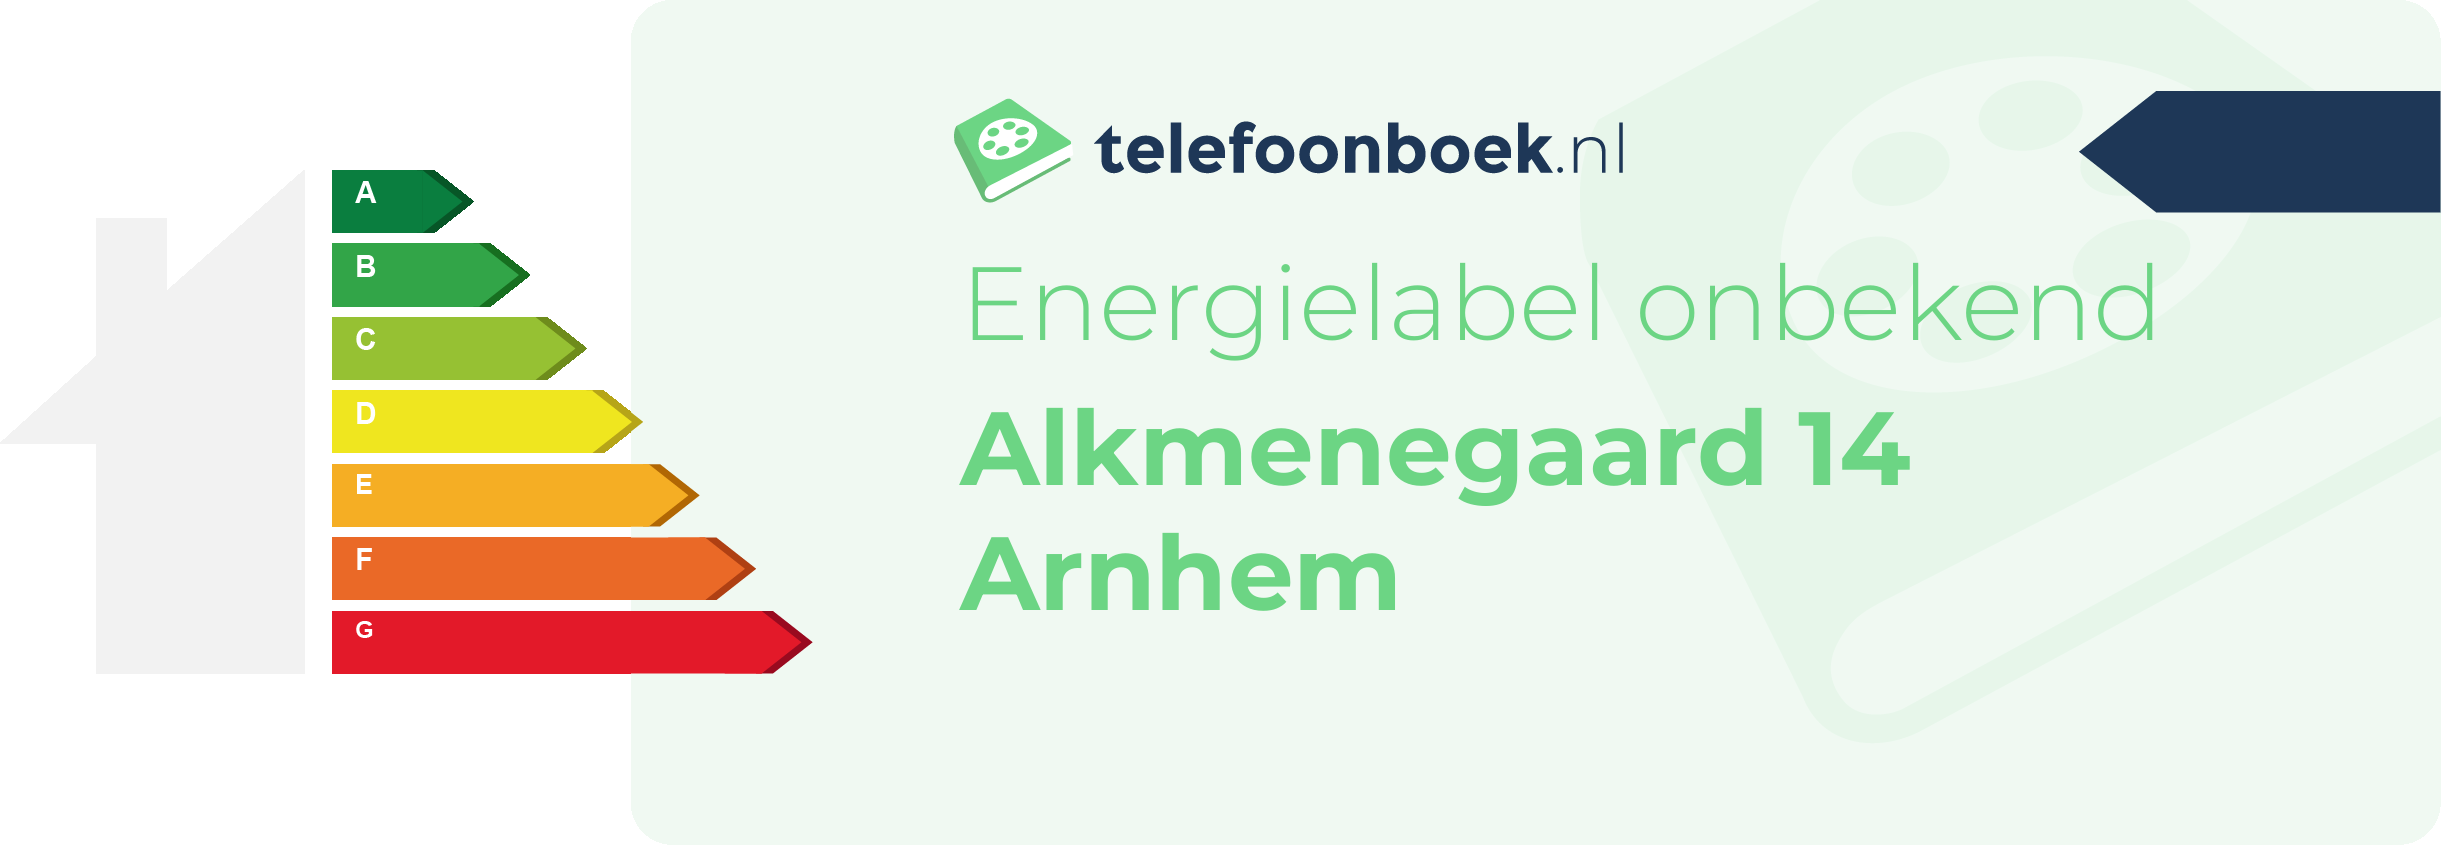 Energielabel Alkmenegaard 14 Arnhem